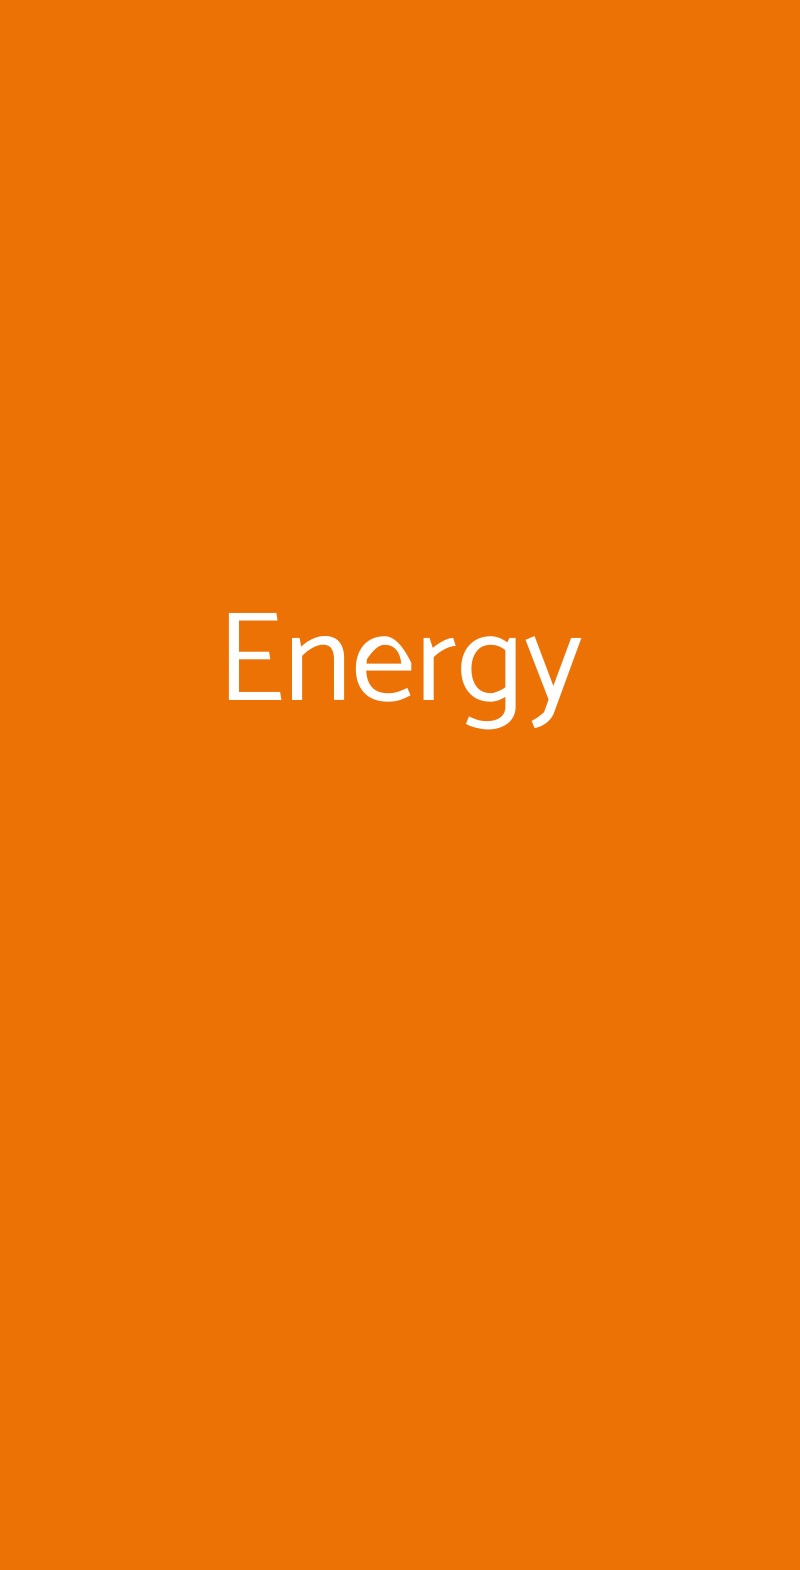 Energy Sammichele Di Bari menù 1 pagina